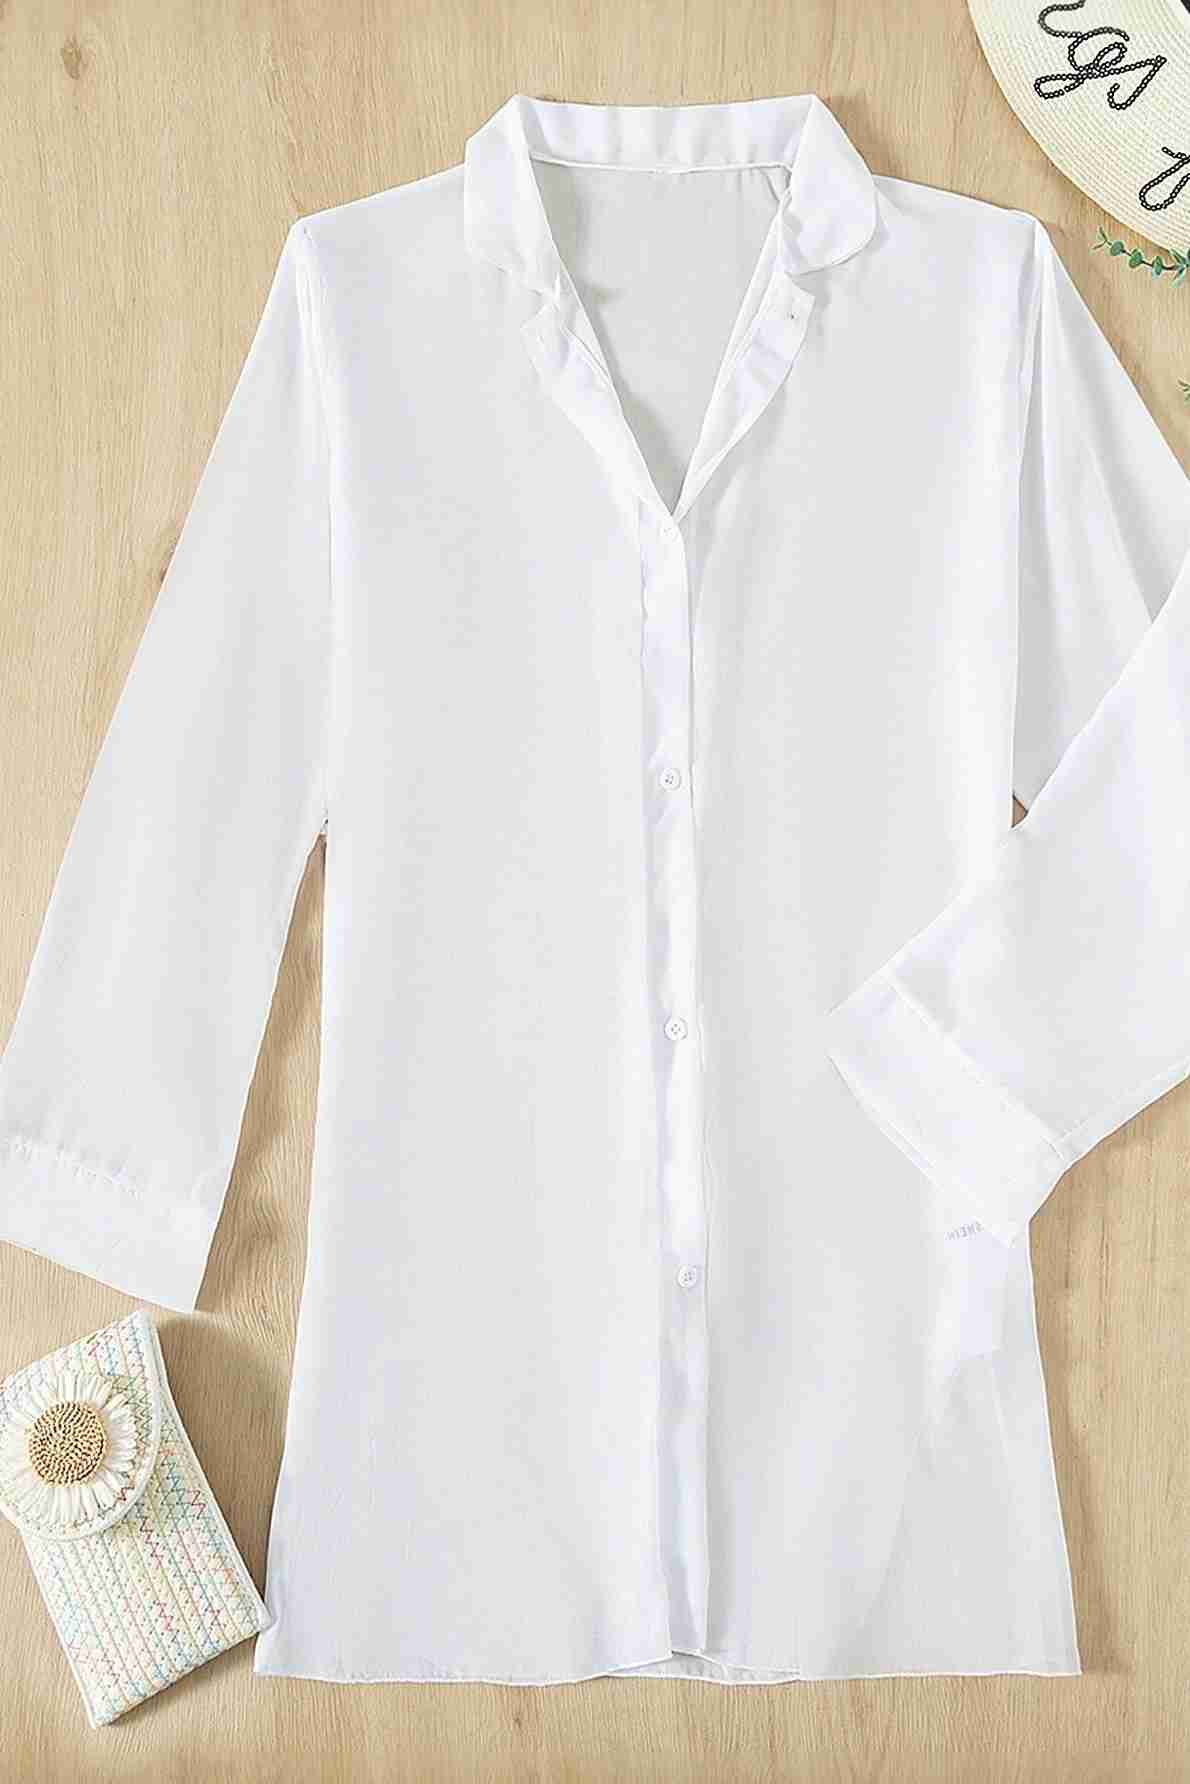 Chiffon Shirt Beach Dress Pareo Kimono Kaftan White Piamoda